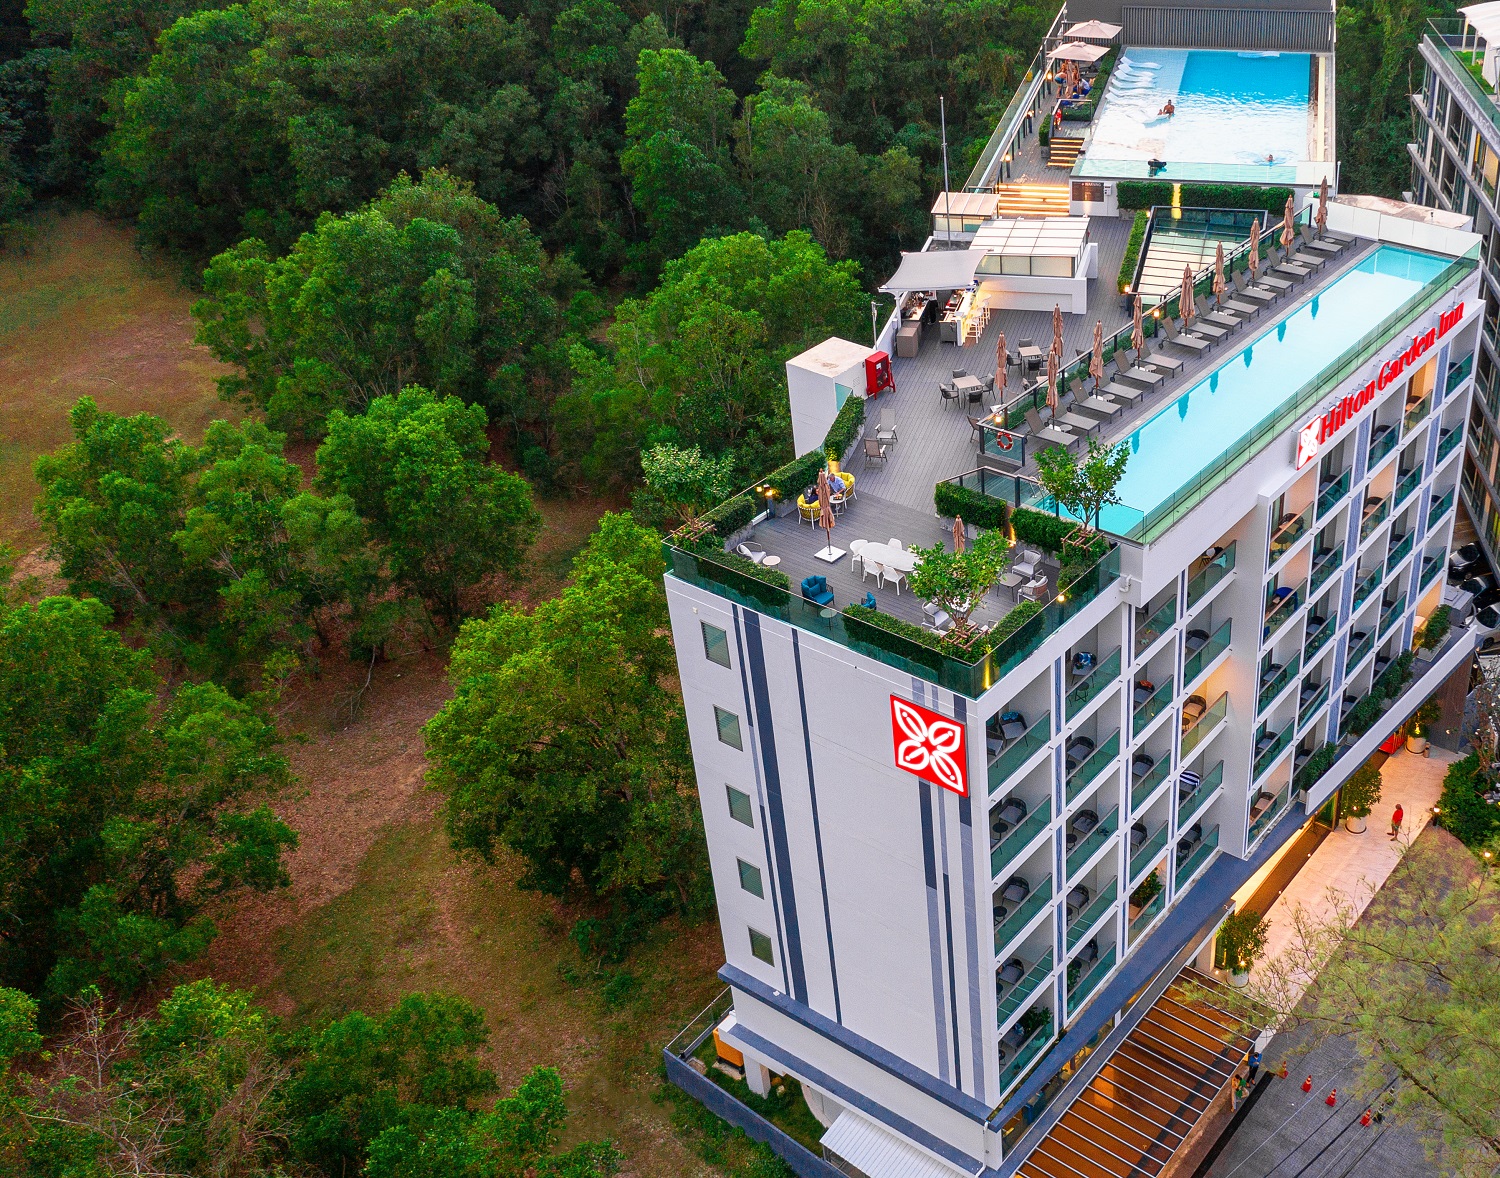 Megatix 62nd Thai Tiew Thai Hilton Garden Inn Phuket Bangtao Buy 1 Night Get 1 Free